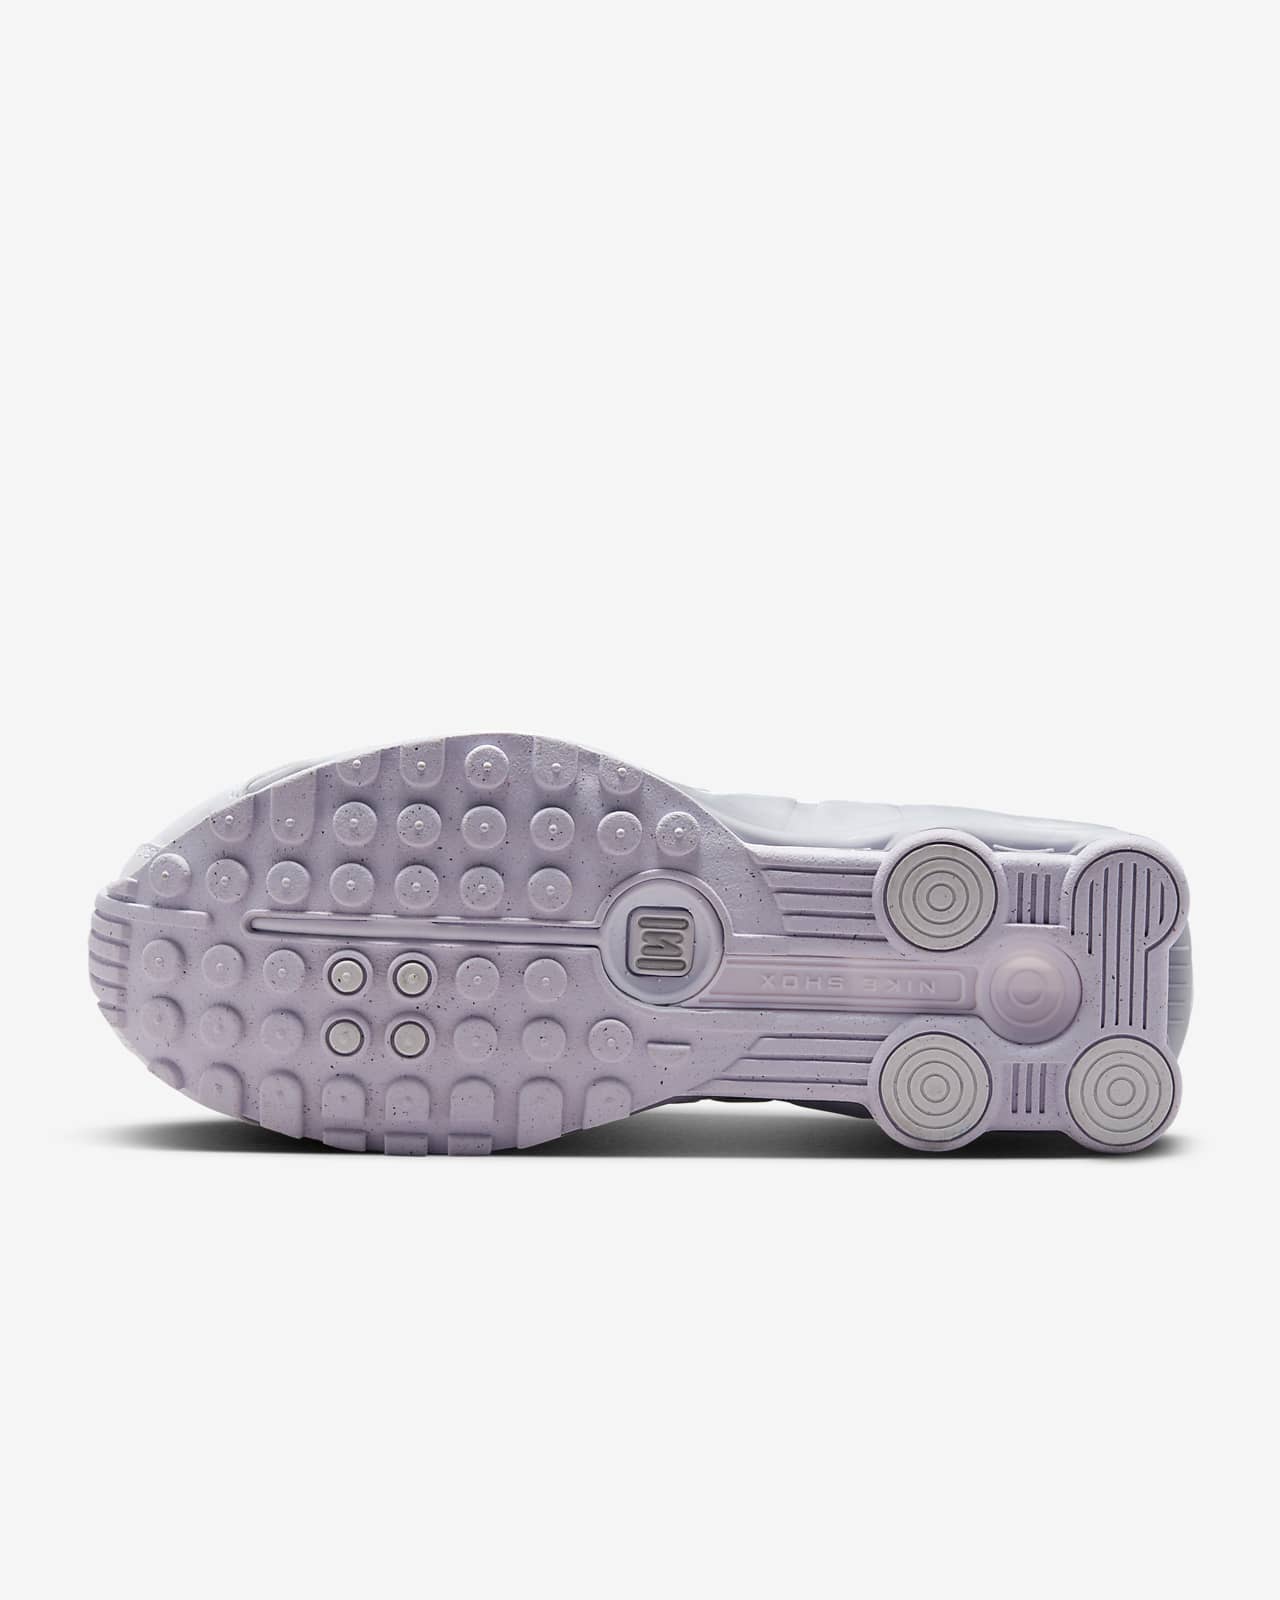 Nike Shox R4 Women's Shoes